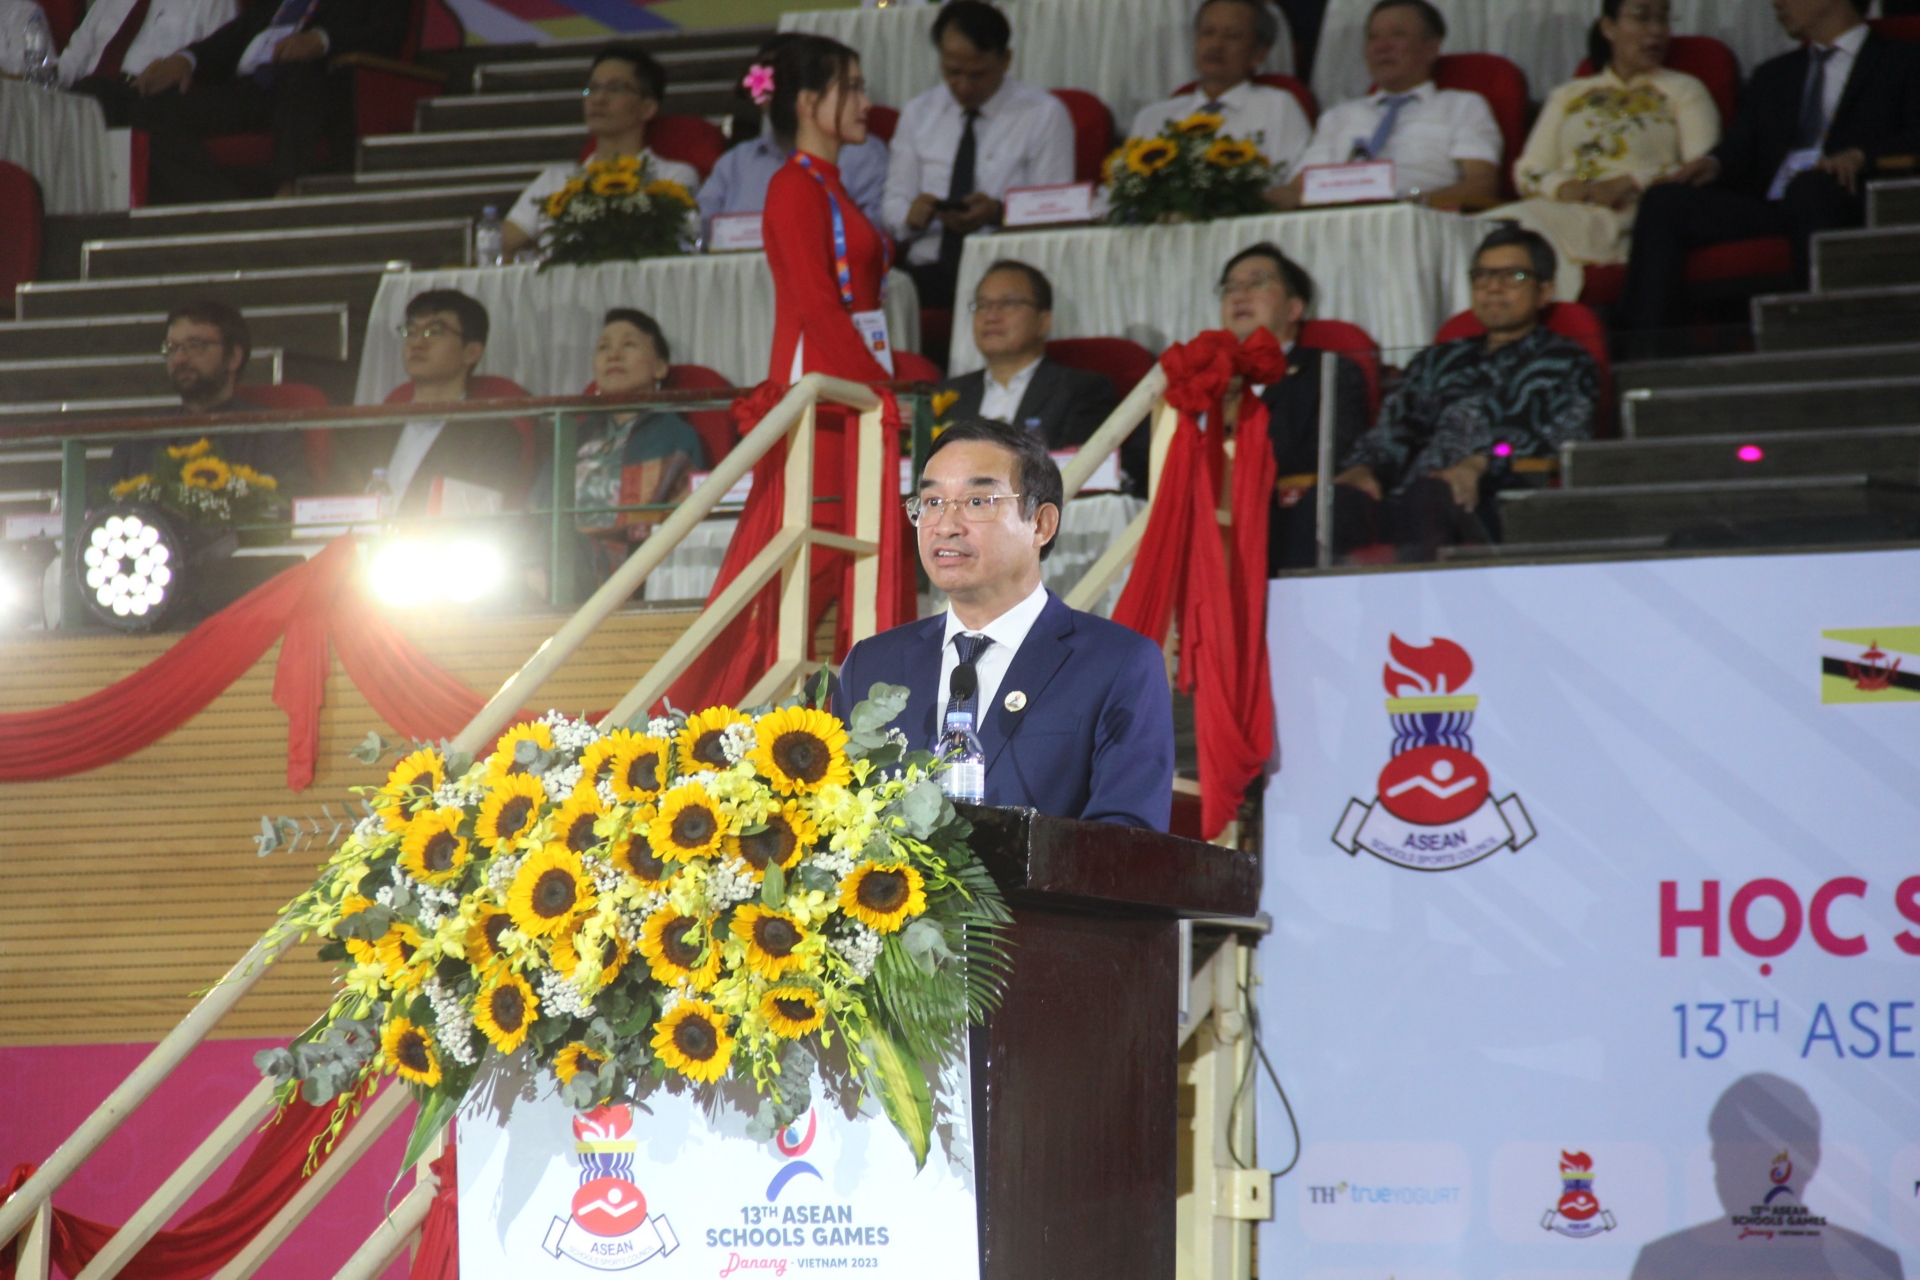 Chủ tịch UBND thành phố Đà Nẵng Lê Trung Chinh bày tỏ hi vọng một kỳ Đại hội đáng nhớ với những cuộc đua, những trận đấu sôi nổi, hào hứng trong những ngày tới.